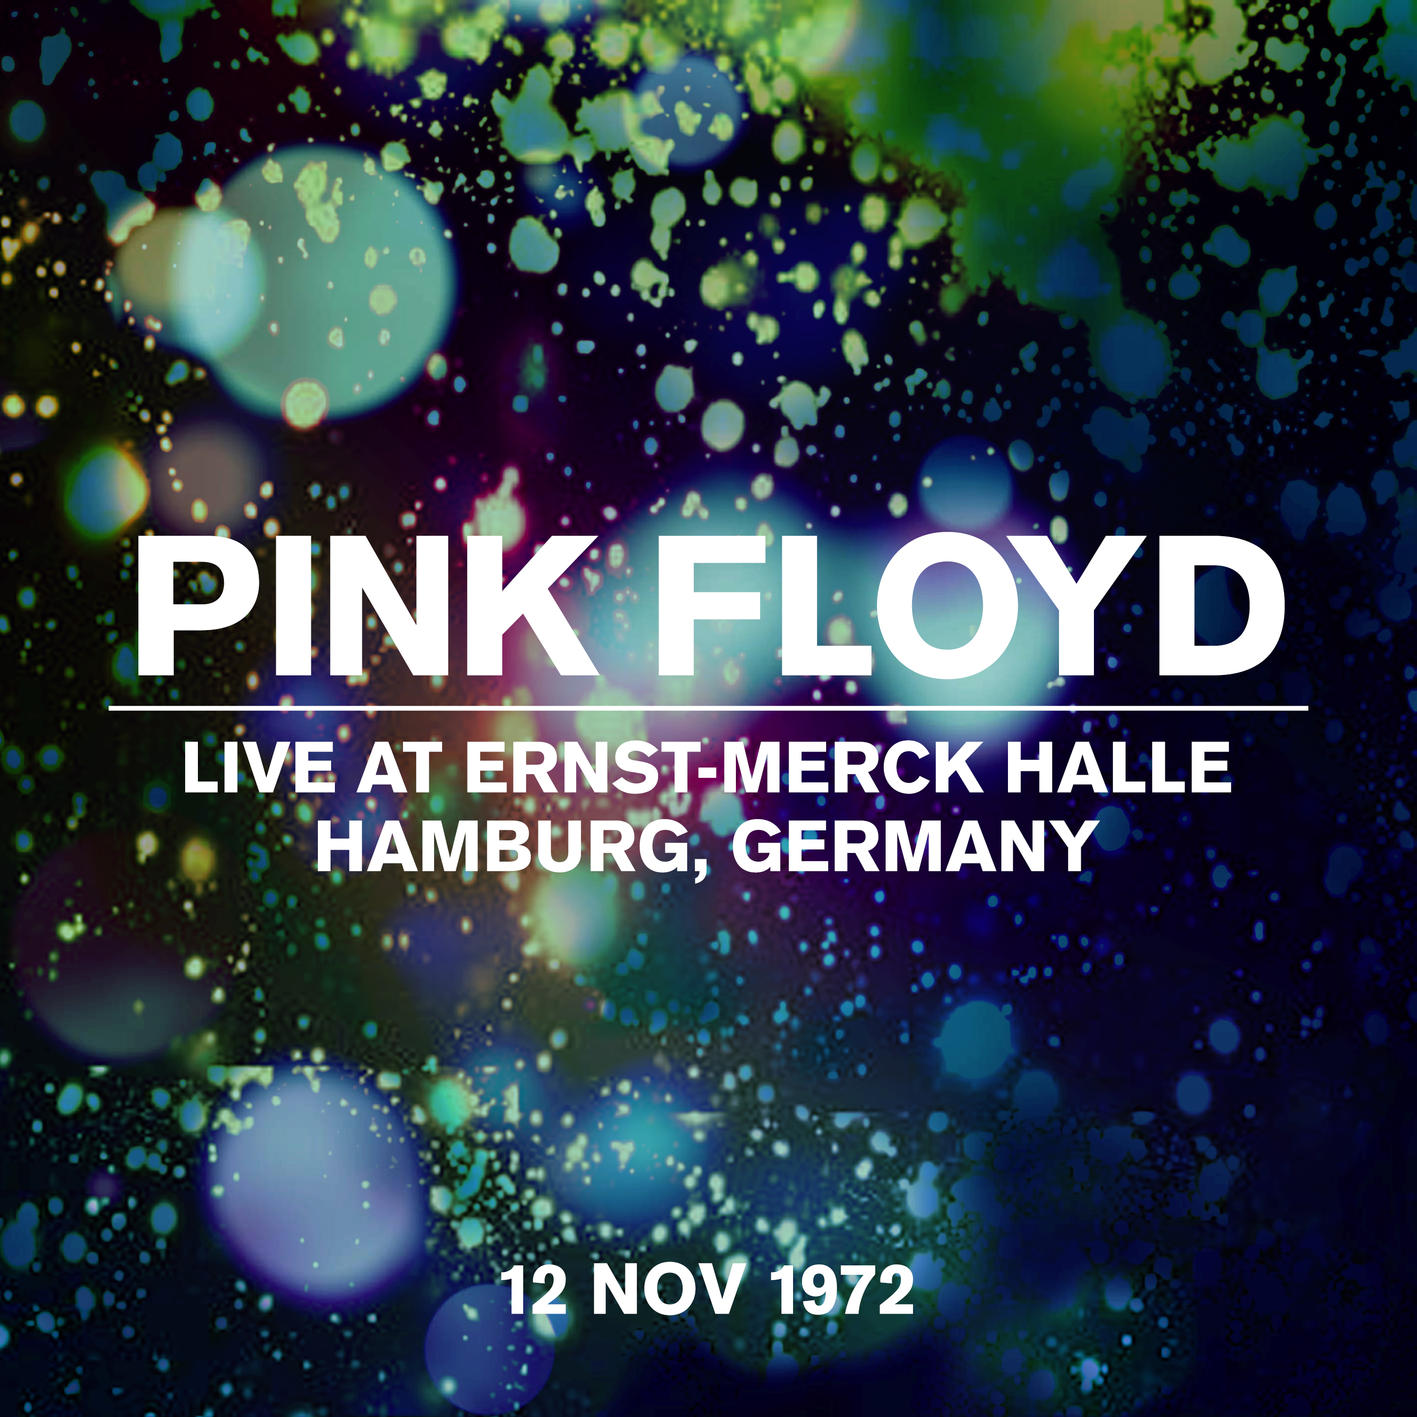 Pink Floyd - Live at Ernst-Merck Halle, Hamburg, Germany, 12 Nov 1972 (1972/2022) [FLAC 24bit/44,1kHz] Download